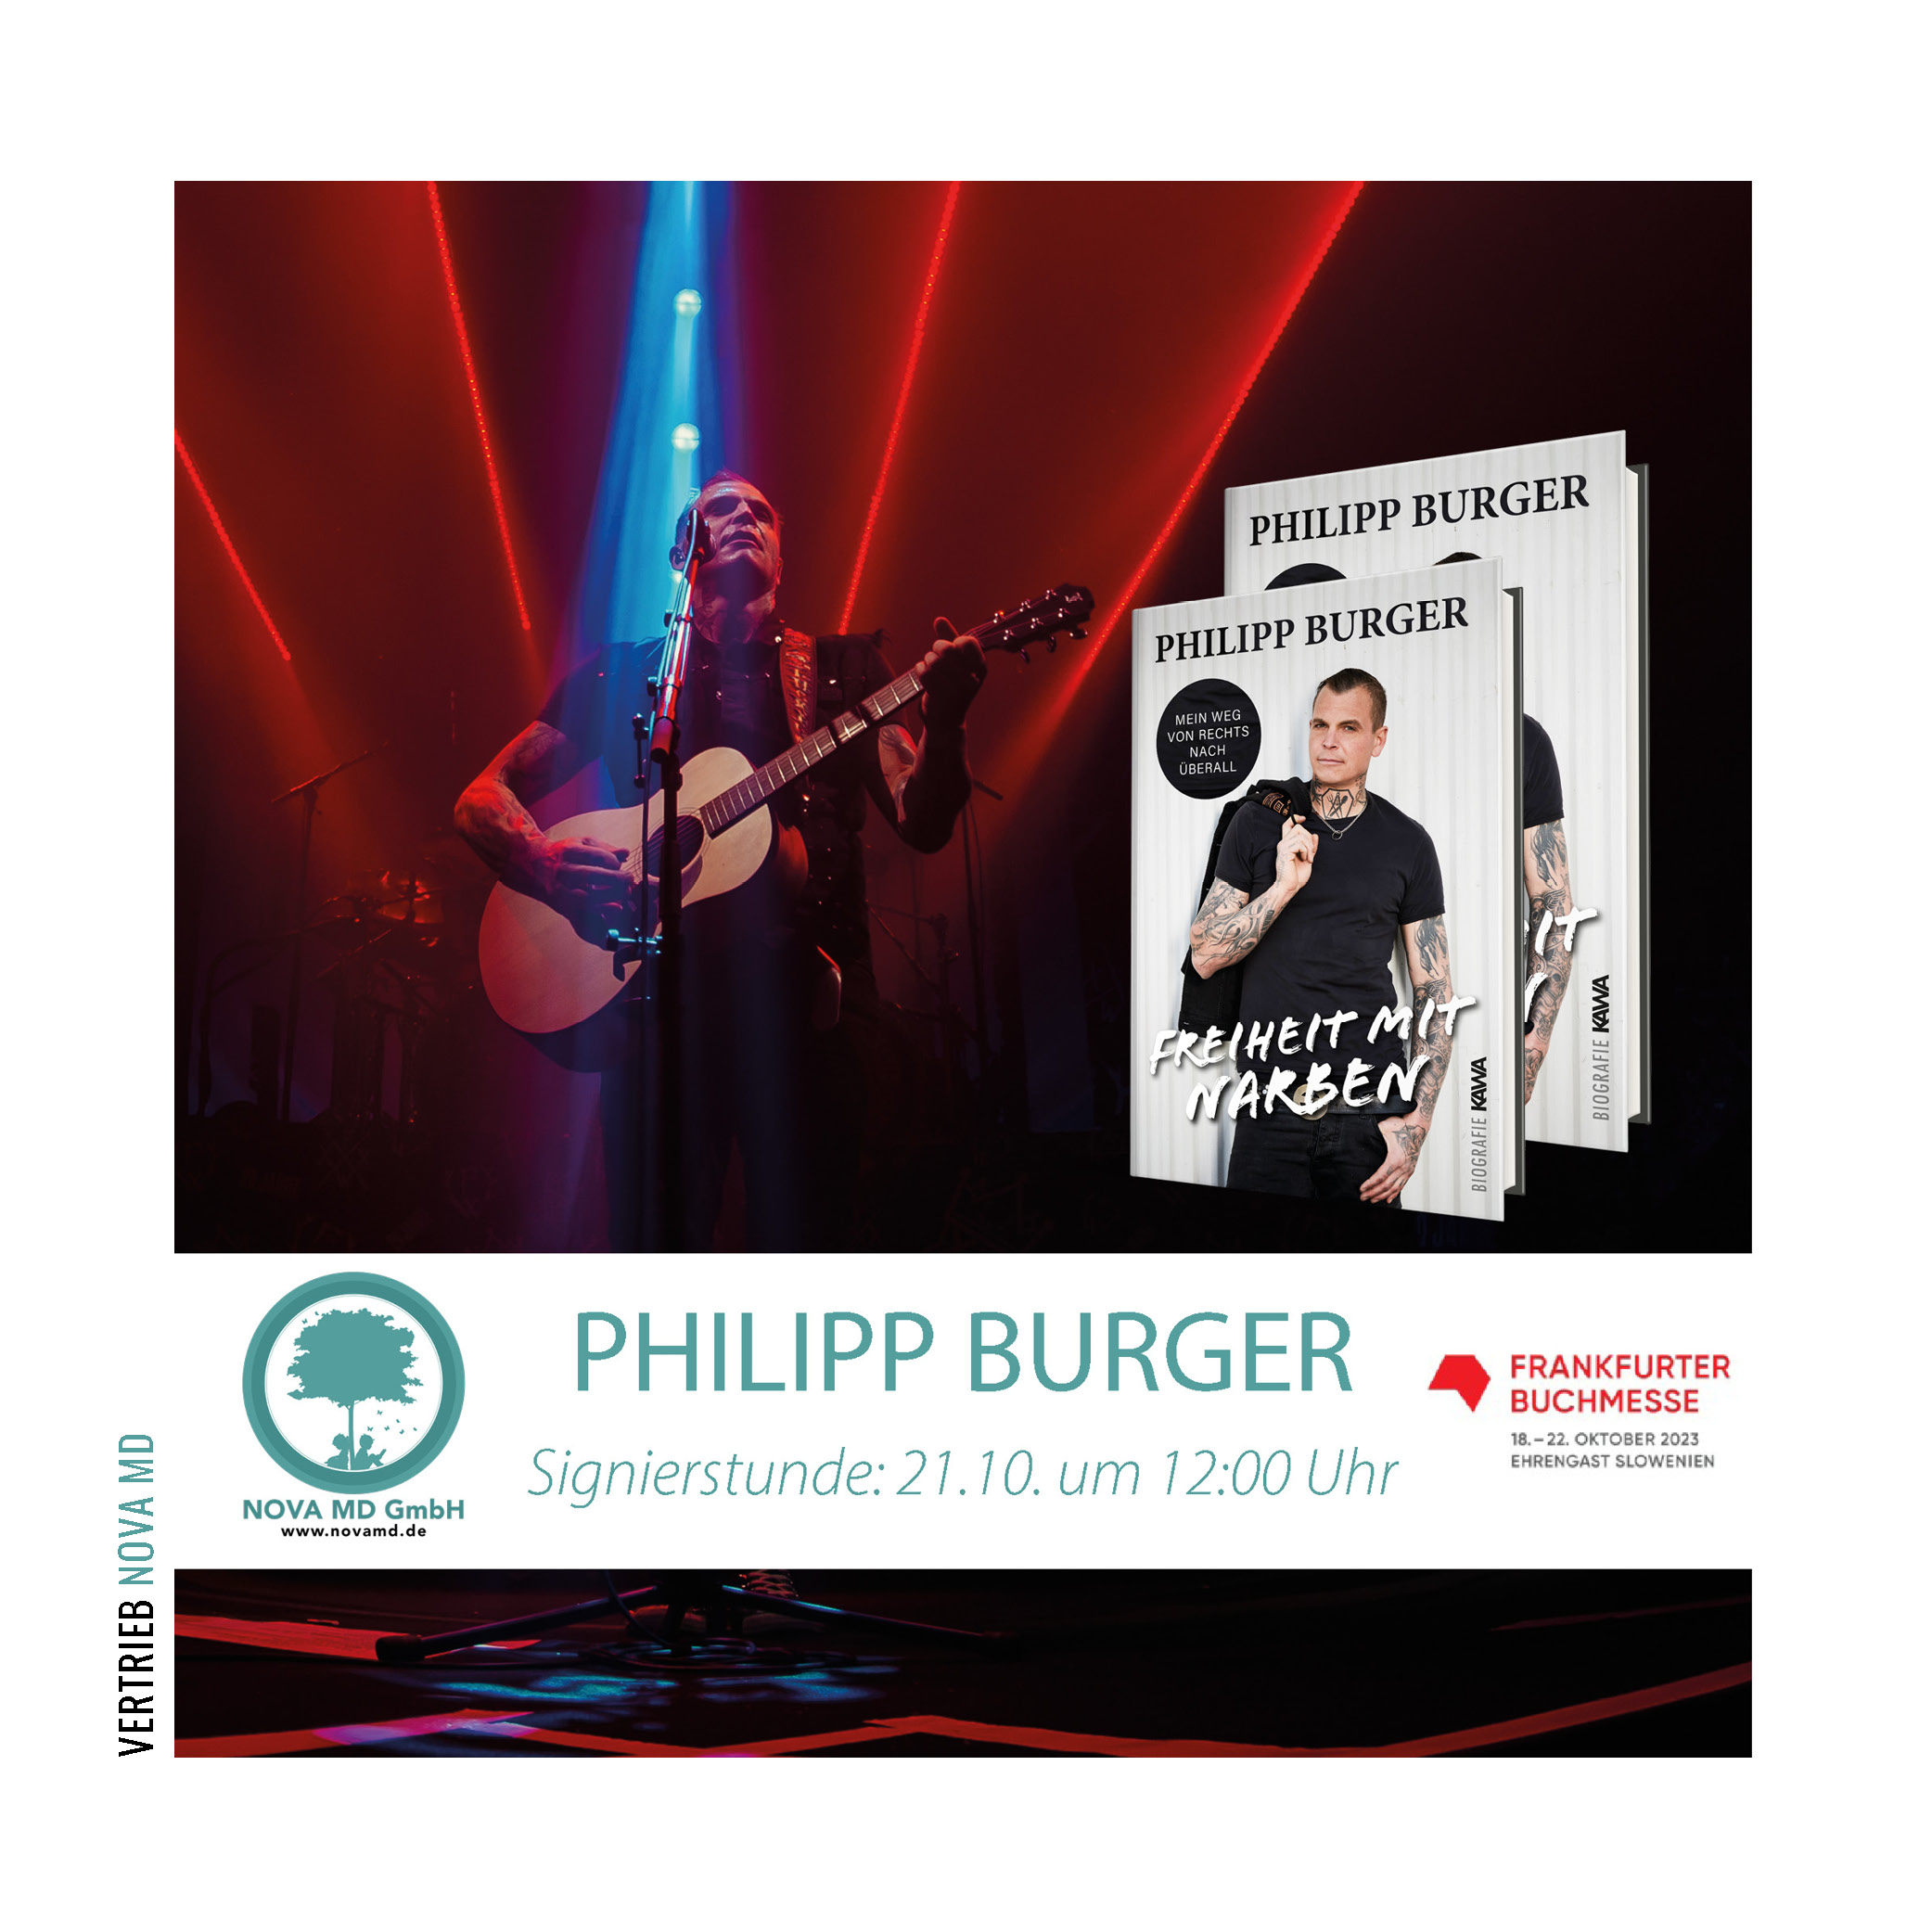 Frei.Wild Sänger Philipp Burger und sein neues Buch mit Ankündigung für Signierstunde